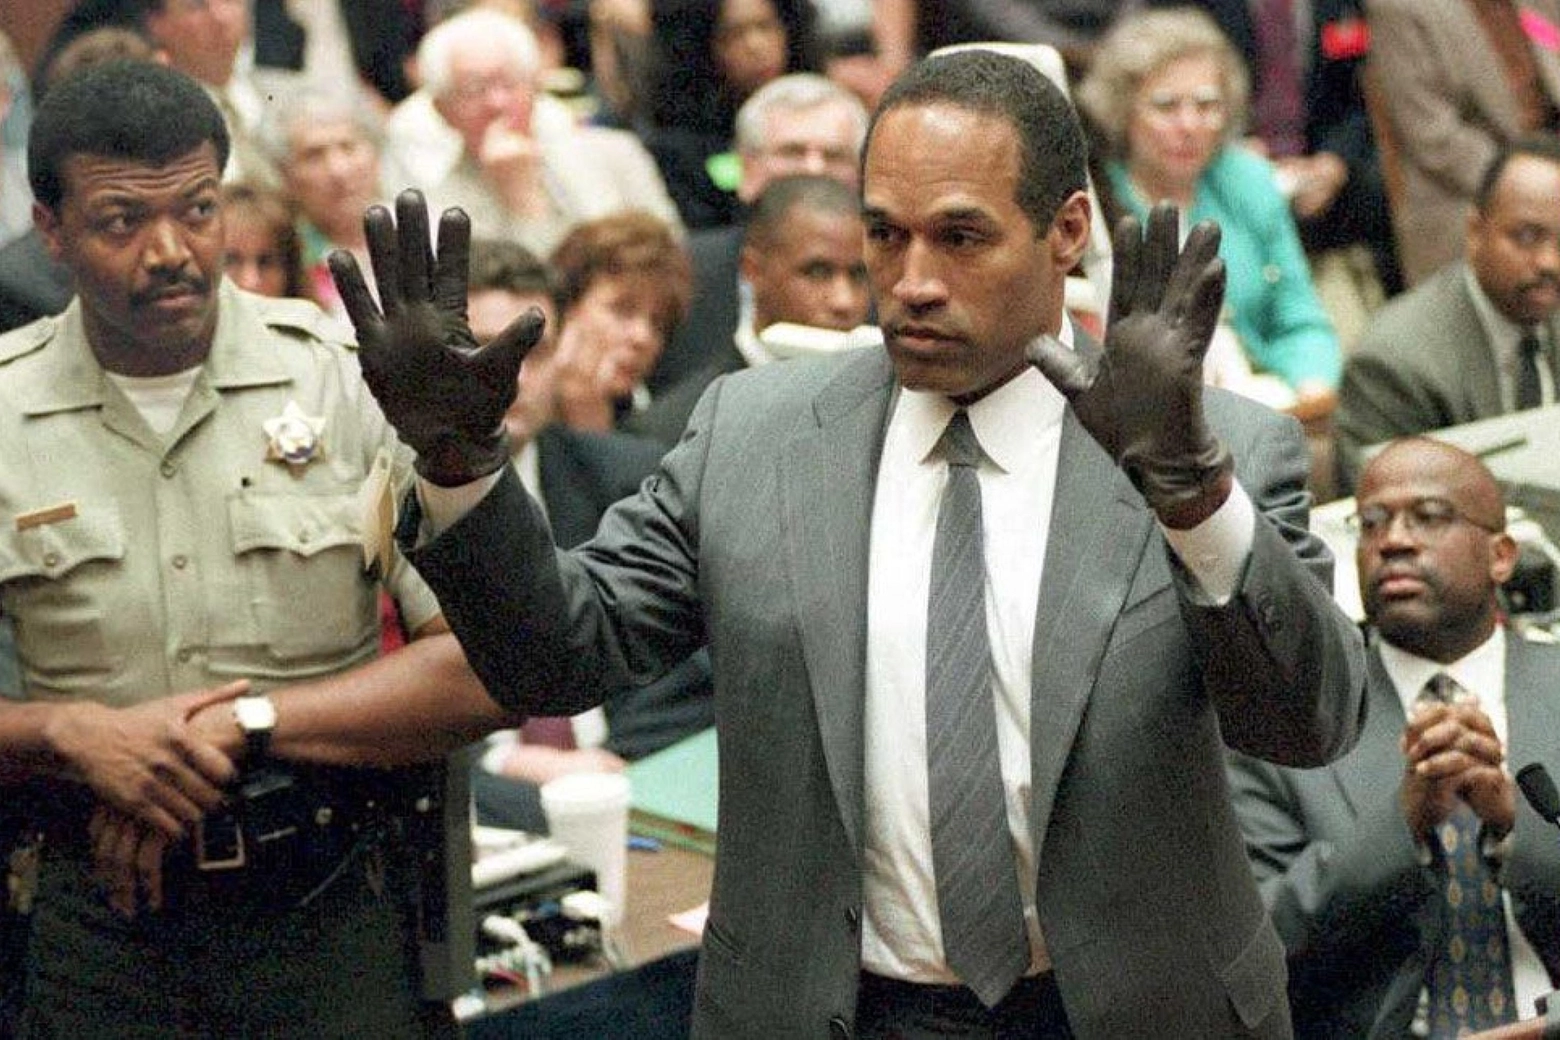 Al processo per l'omicidio della moglie, Simpson indossa un paio di guanti simili a quelli ritrovati sulla scena del crimine (Ansa)